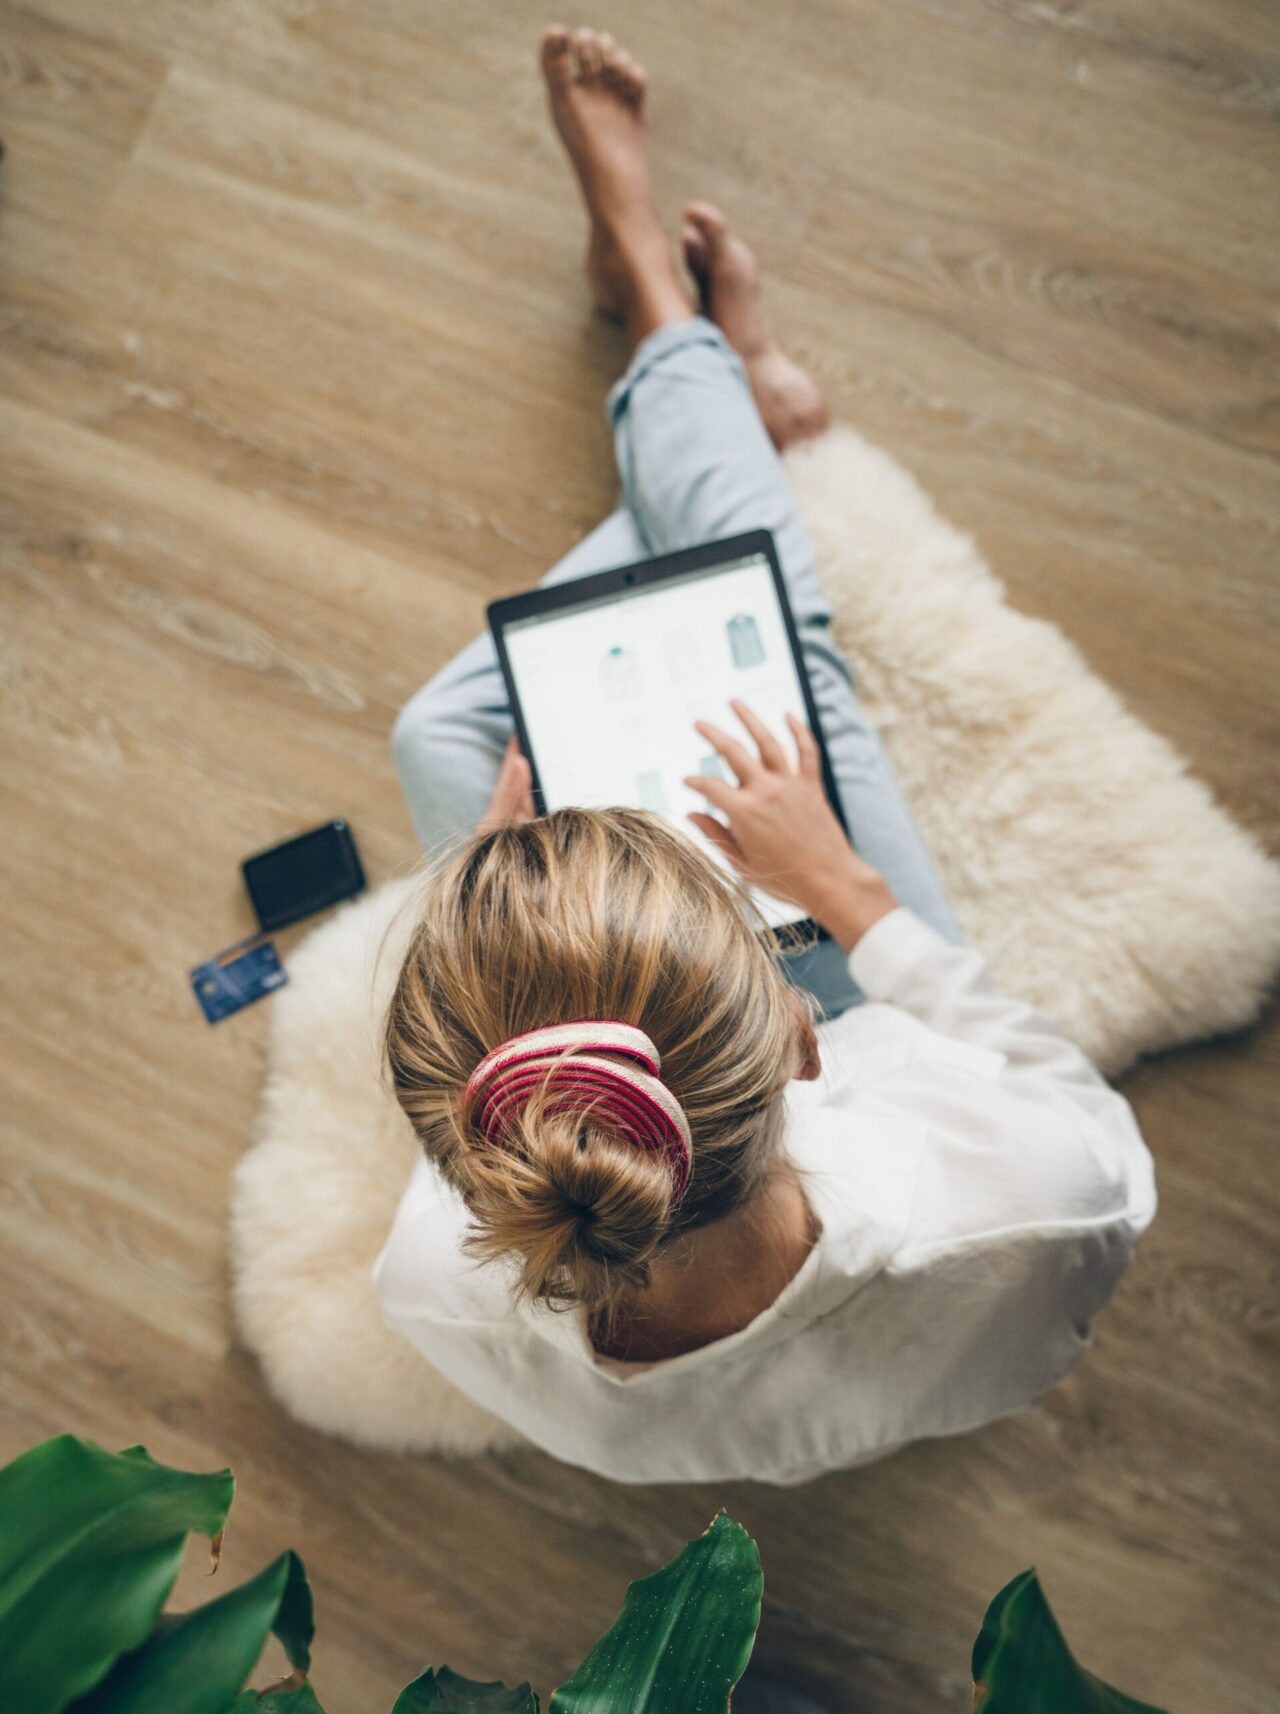 Elektronik-Leasing: Frau sitzt mit Tablet in der Hand auf Teppich